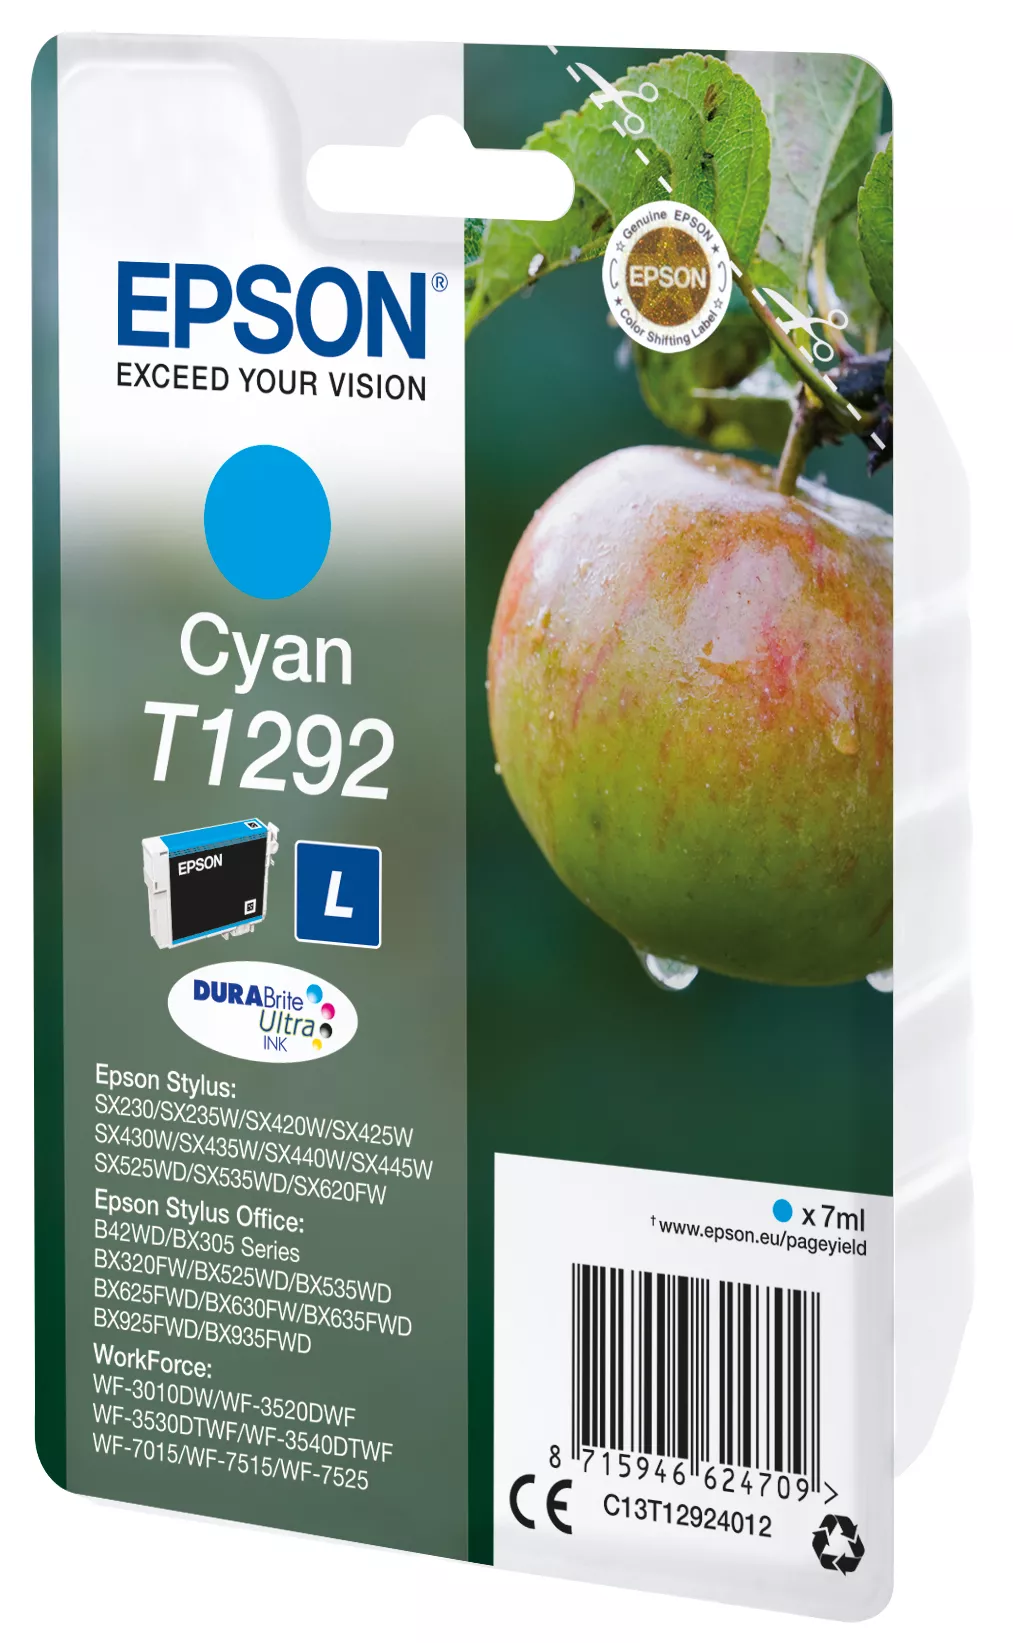 Vente Epson Apple Cartouche "Pomme" - Encre DURABrite Ultra Epson au meilleur prix - visuel 2